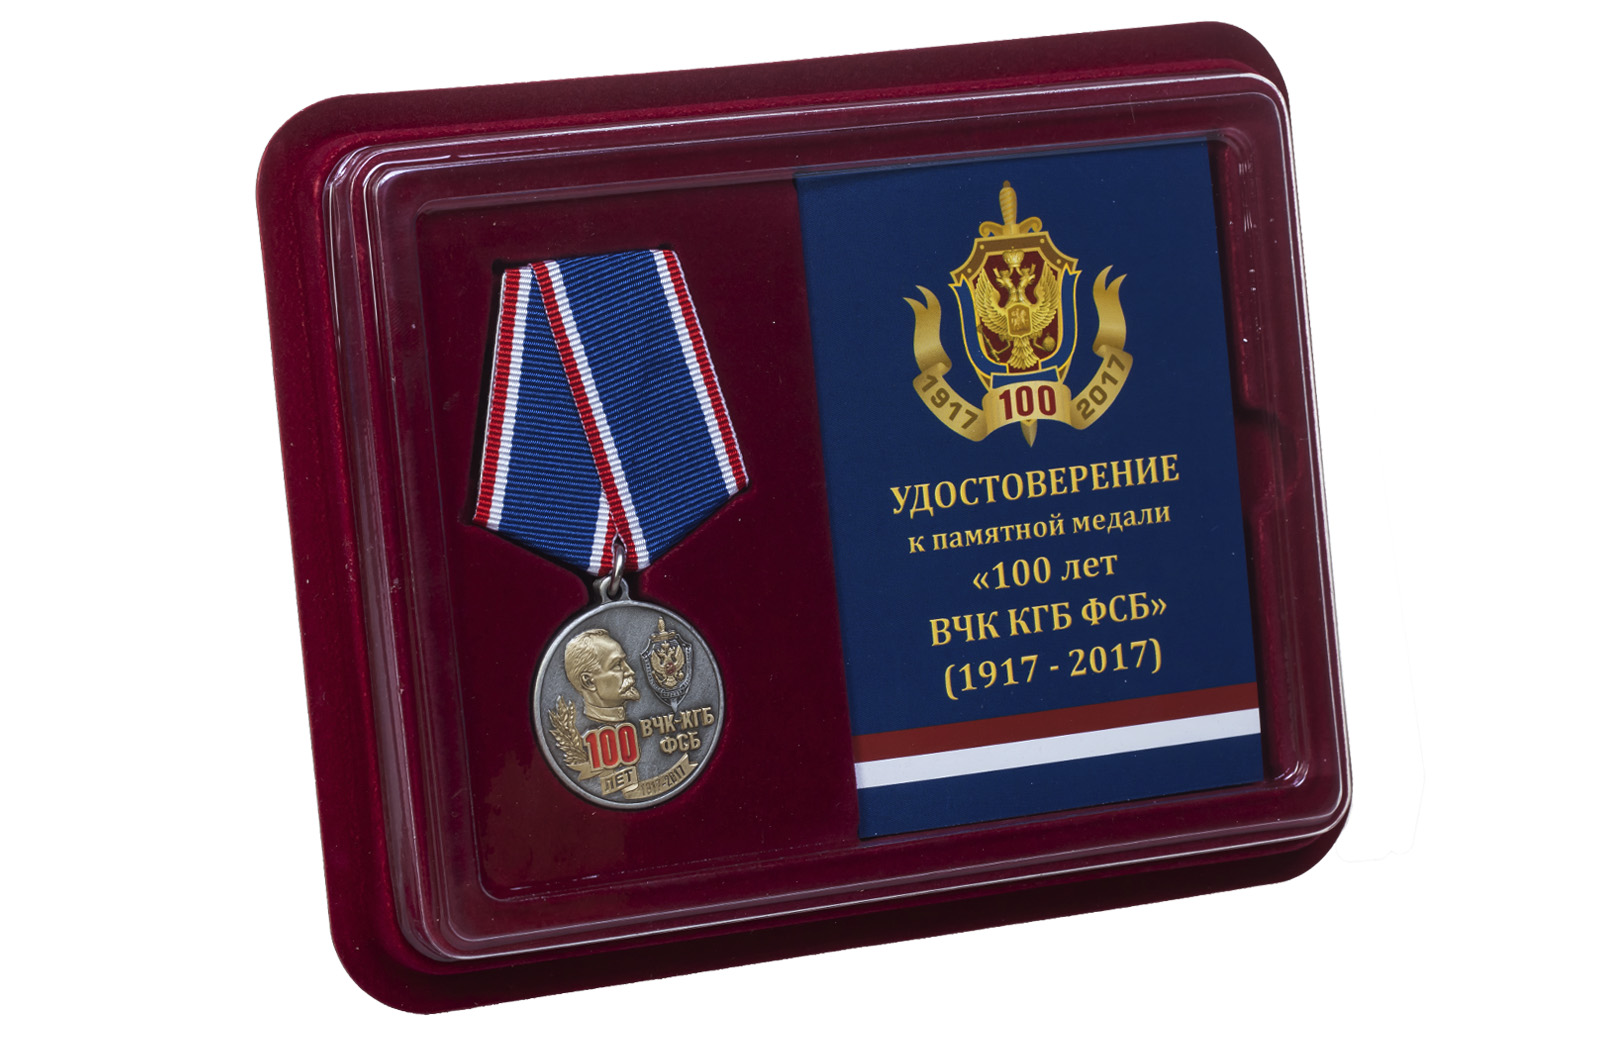 Медаль к 100-летию ВЧК-КГБ-ФСБ 